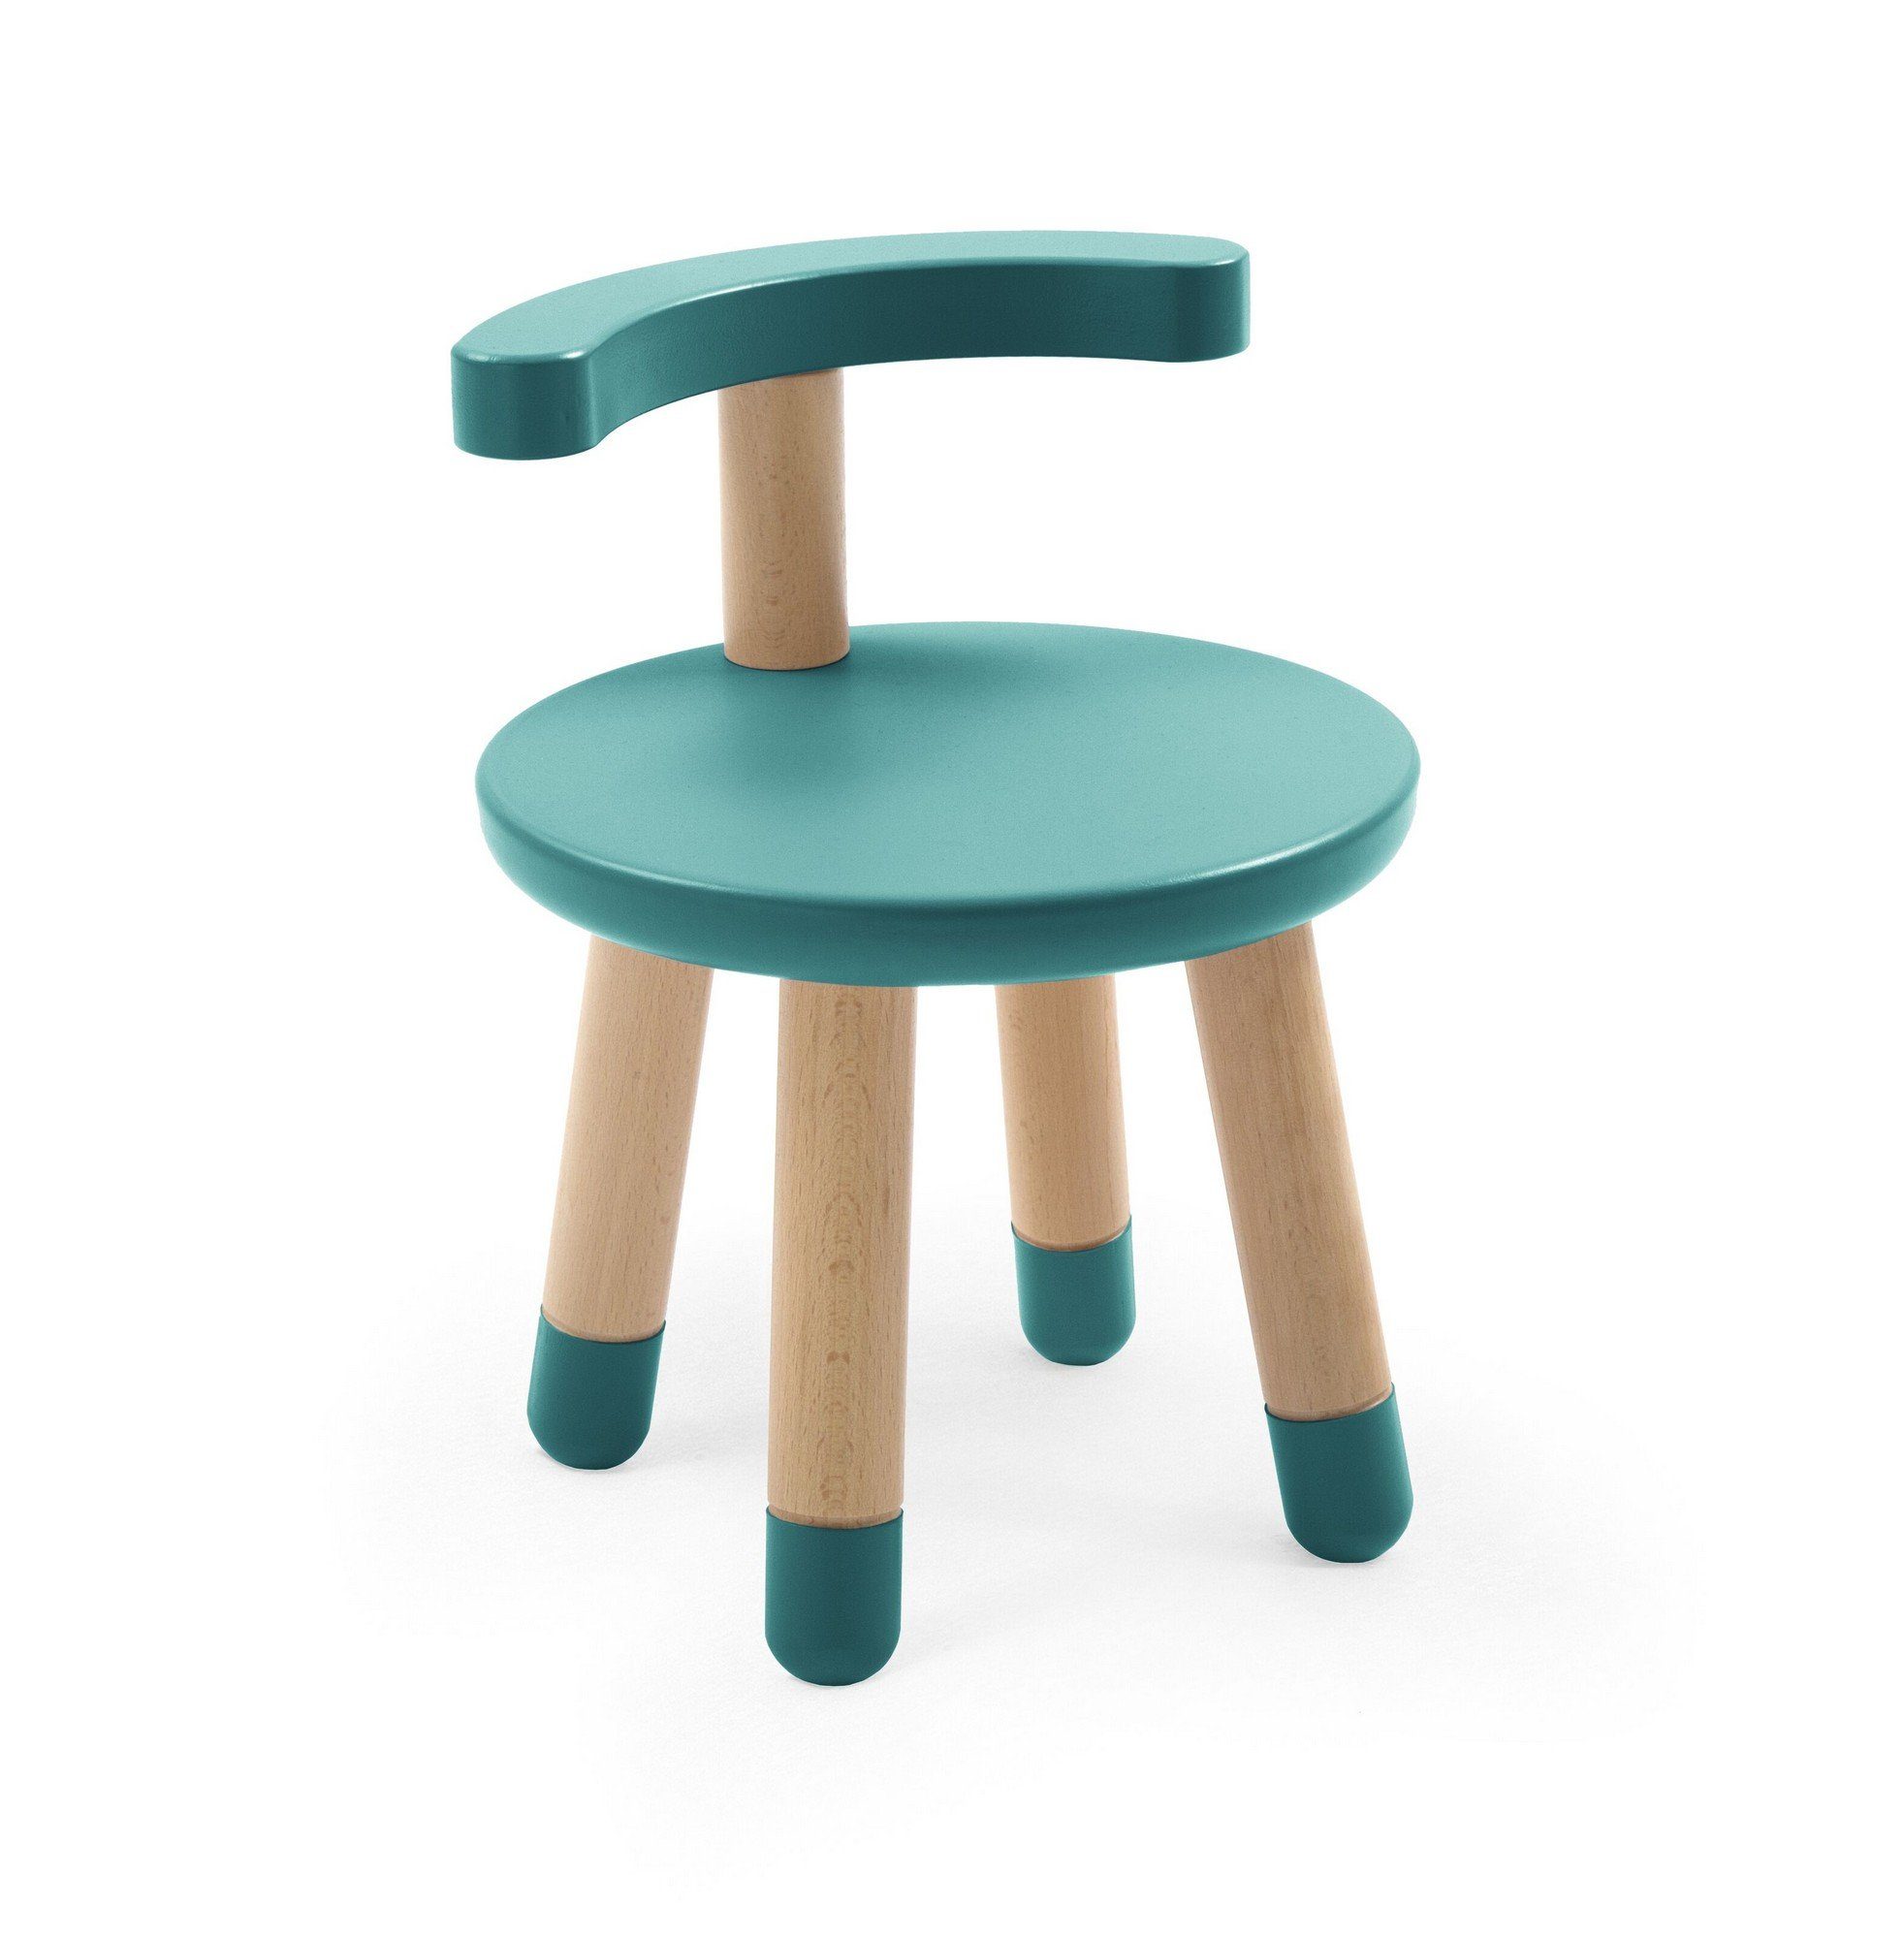 Stokke Kindersitzgruppe MuTable Stuhl - Kinder Holzstuhl für den Multifunktionsspieltisch Mutable - Die ideale Ergänzung für den Spieltisch Tiffany